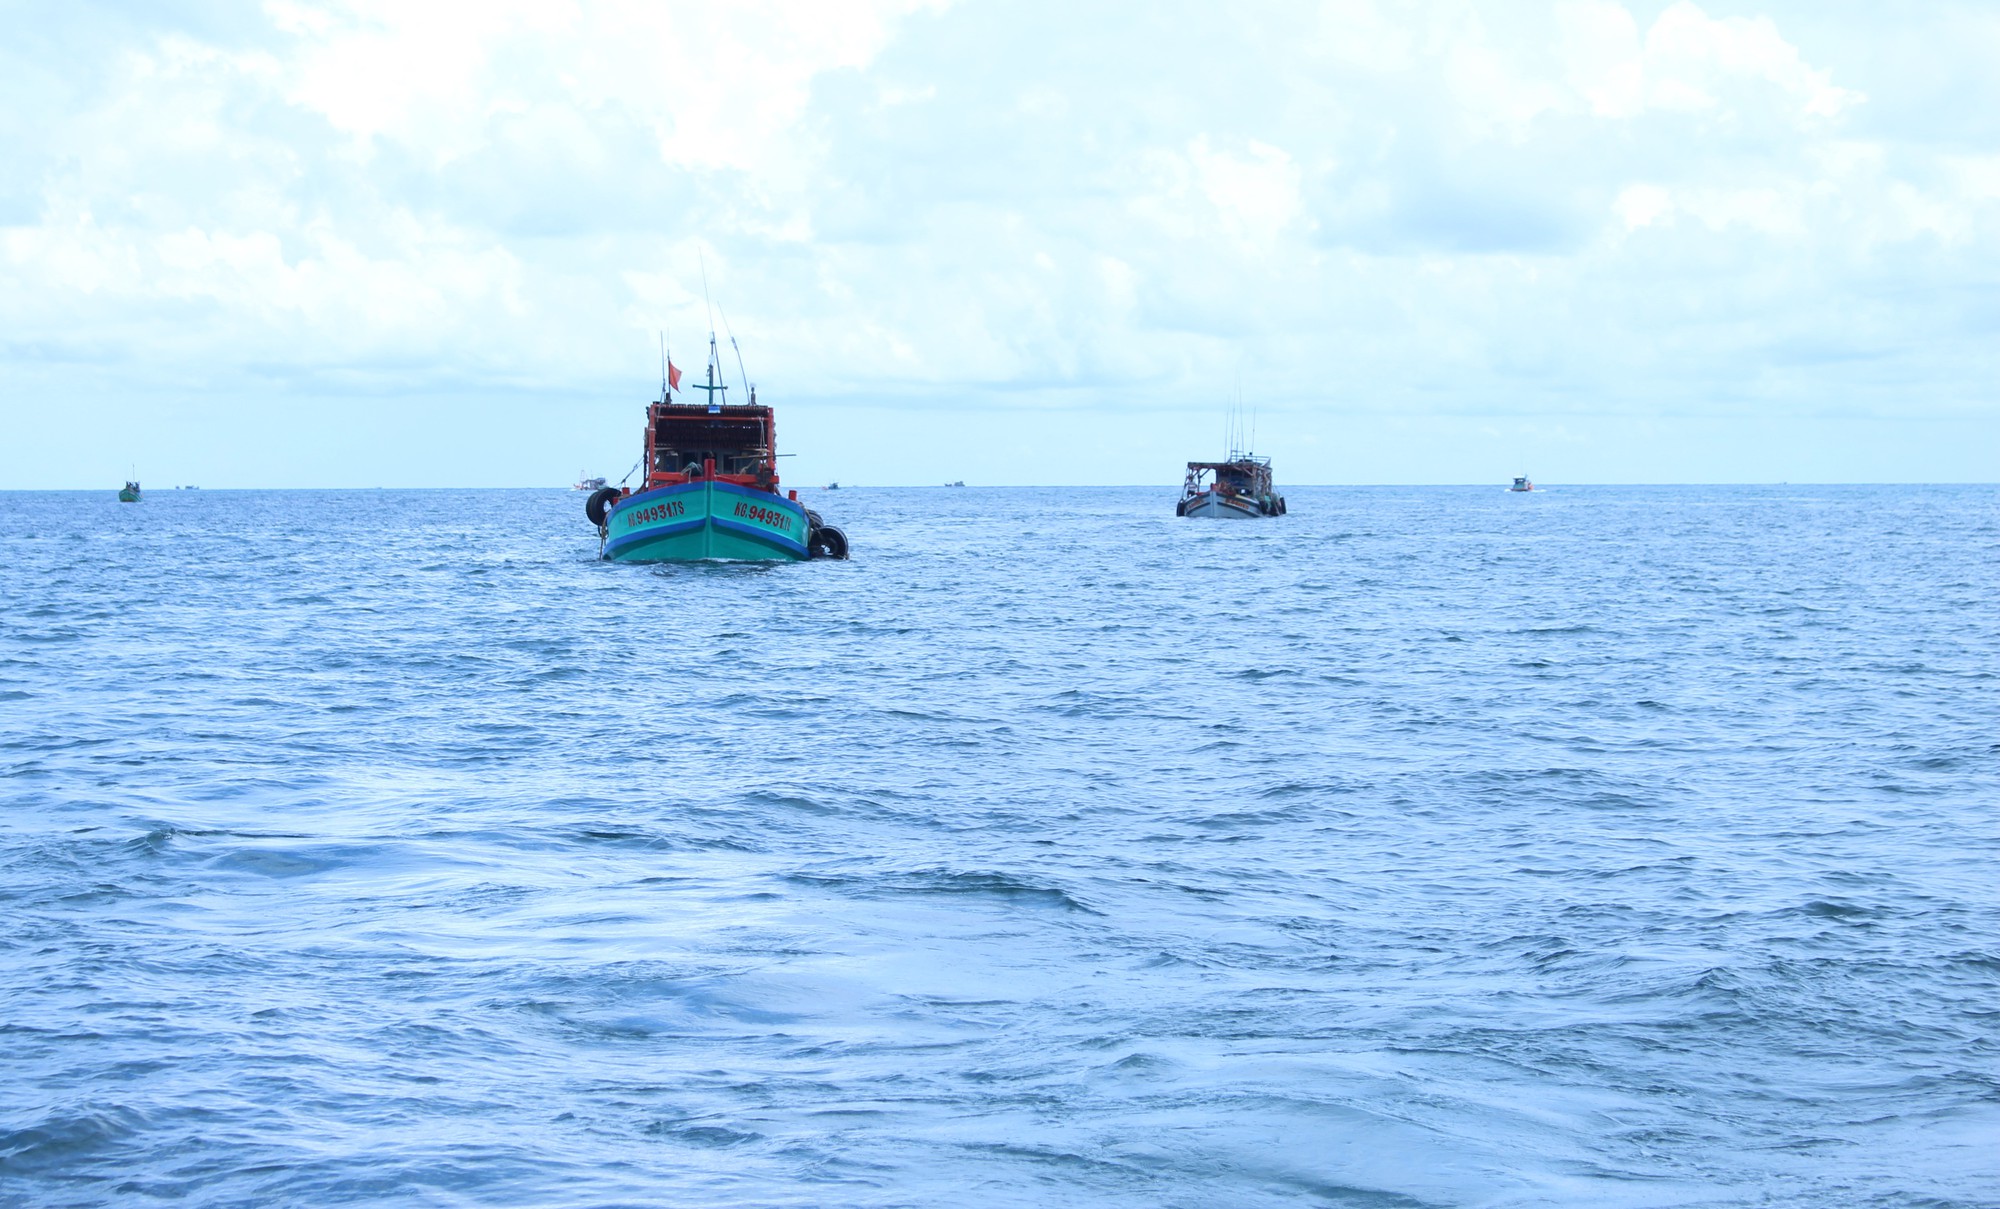 Cảnh sát biển bắt giữ 2 tàu chở 75.000 lít dầu không giấy tờ hợp pháp - Ảnh 1.